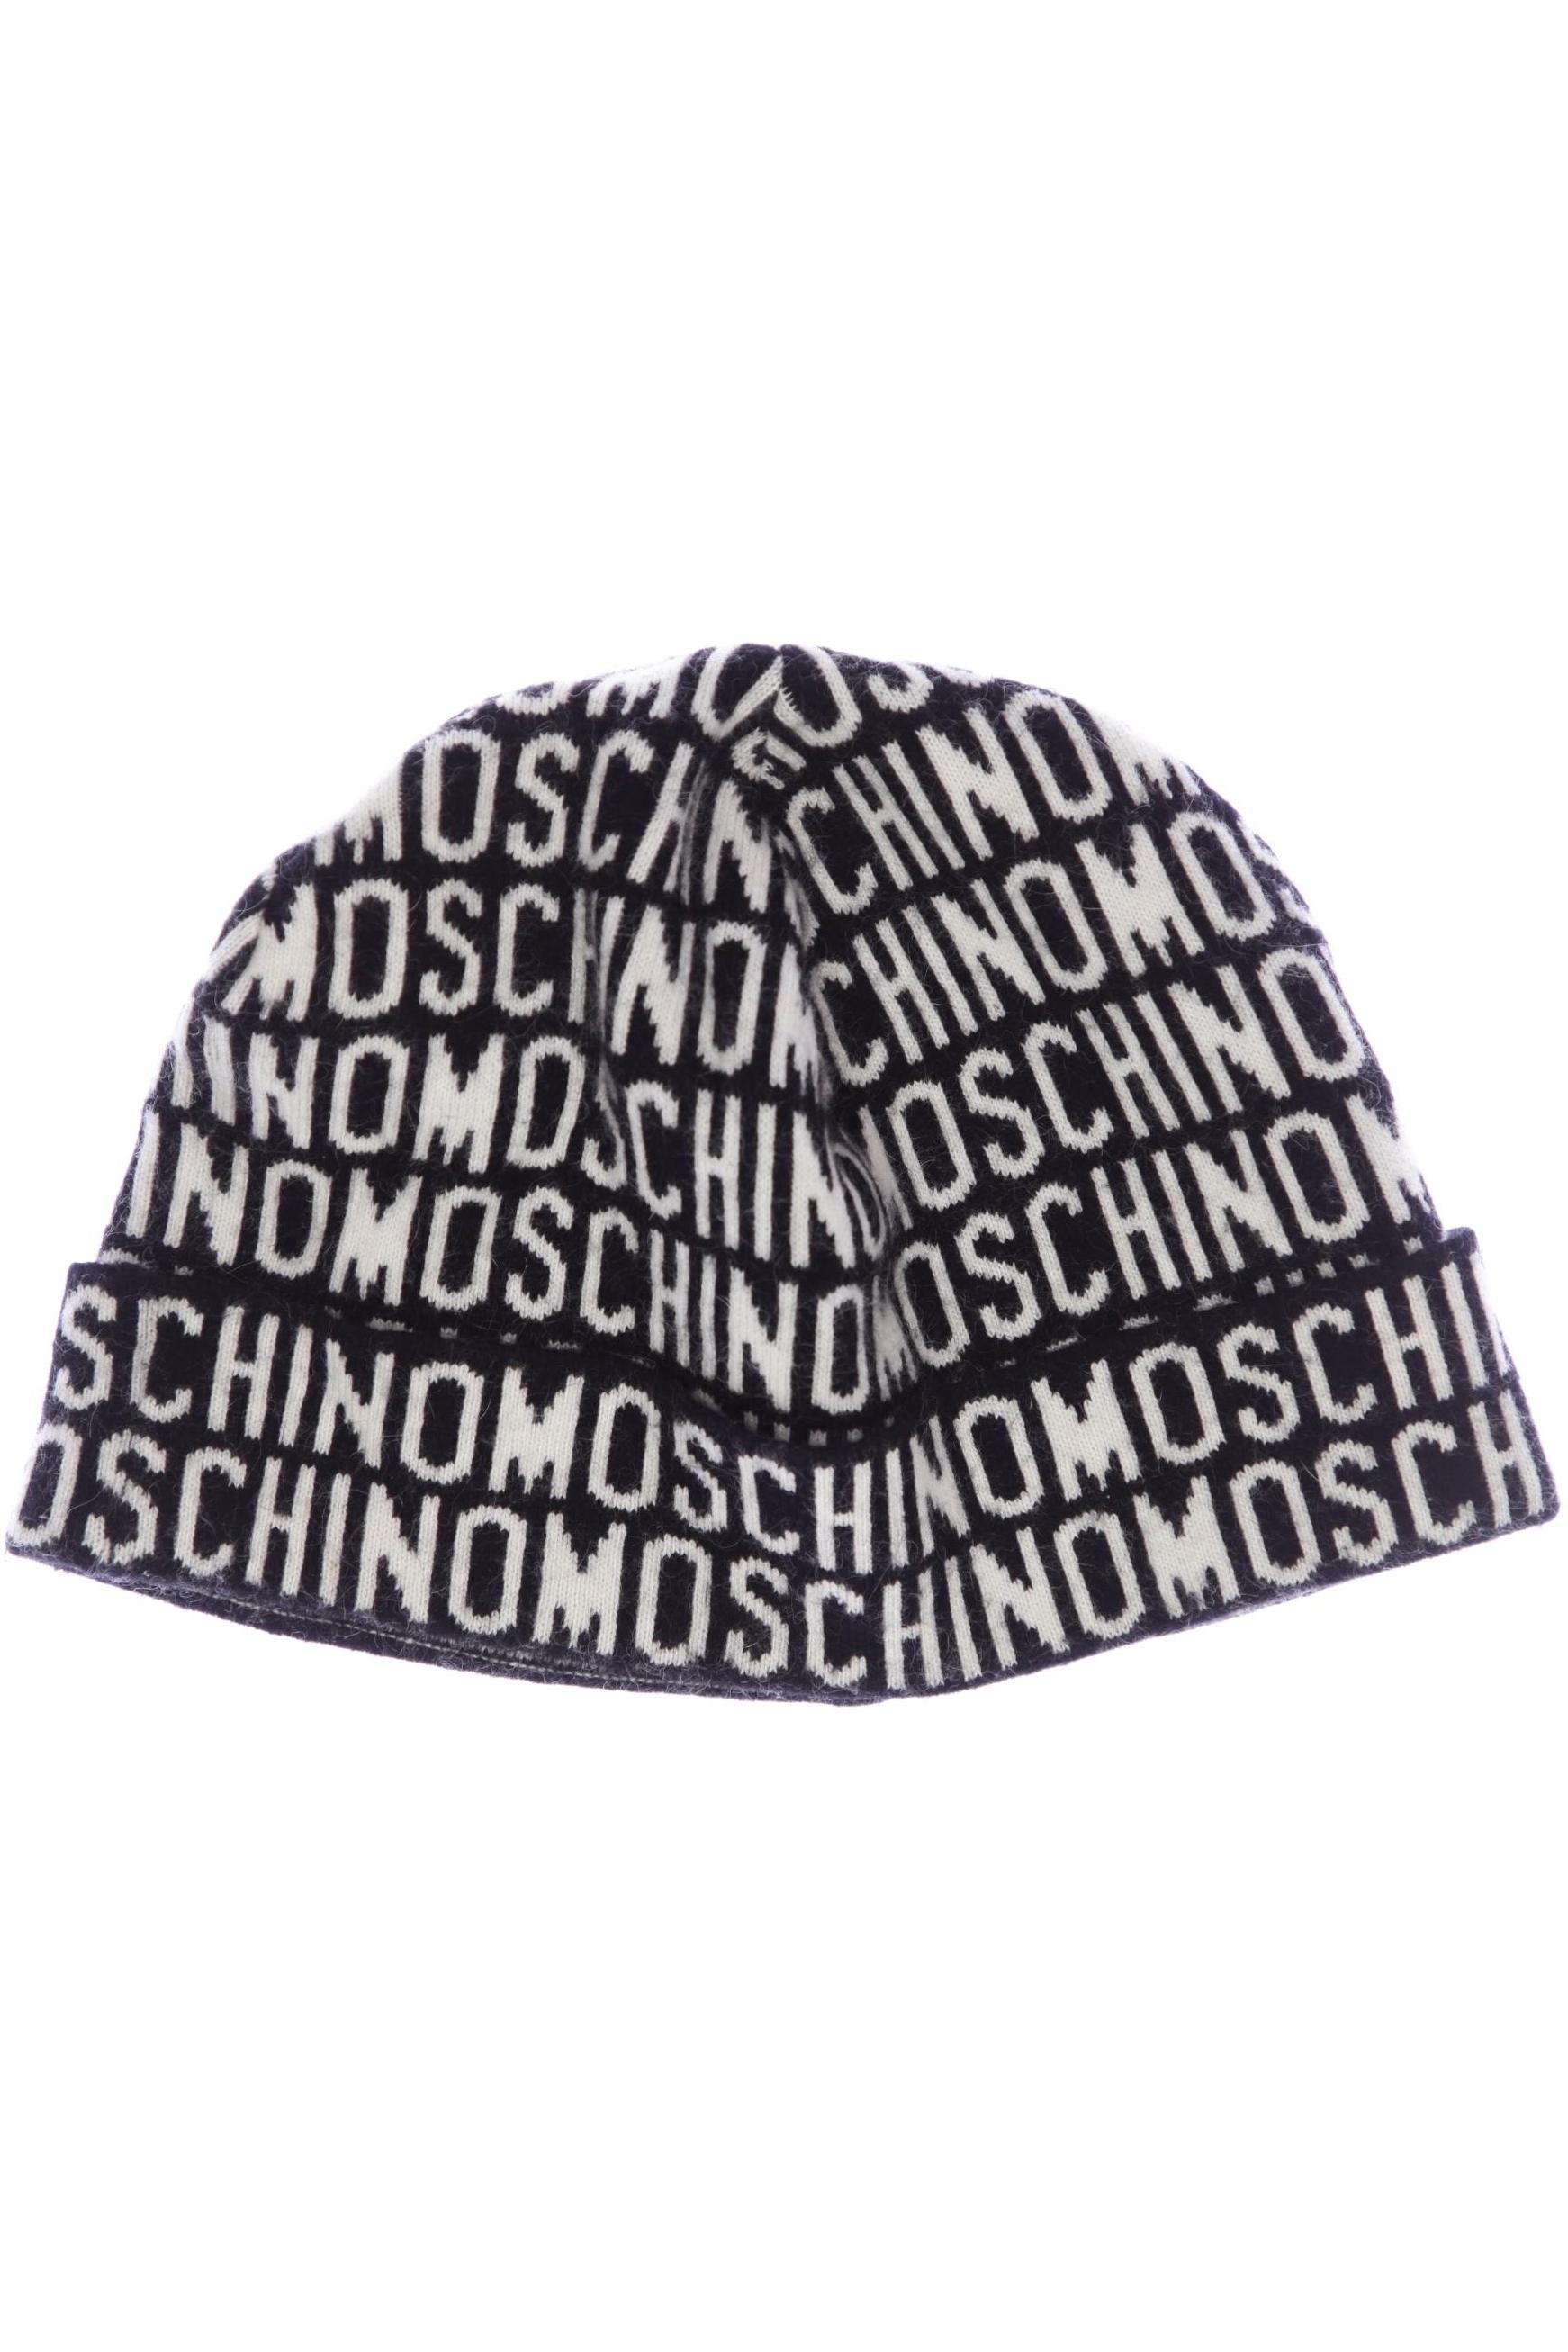 Moschino Damen Hut/Mütze, schwarz, Gr. uni von Moschino